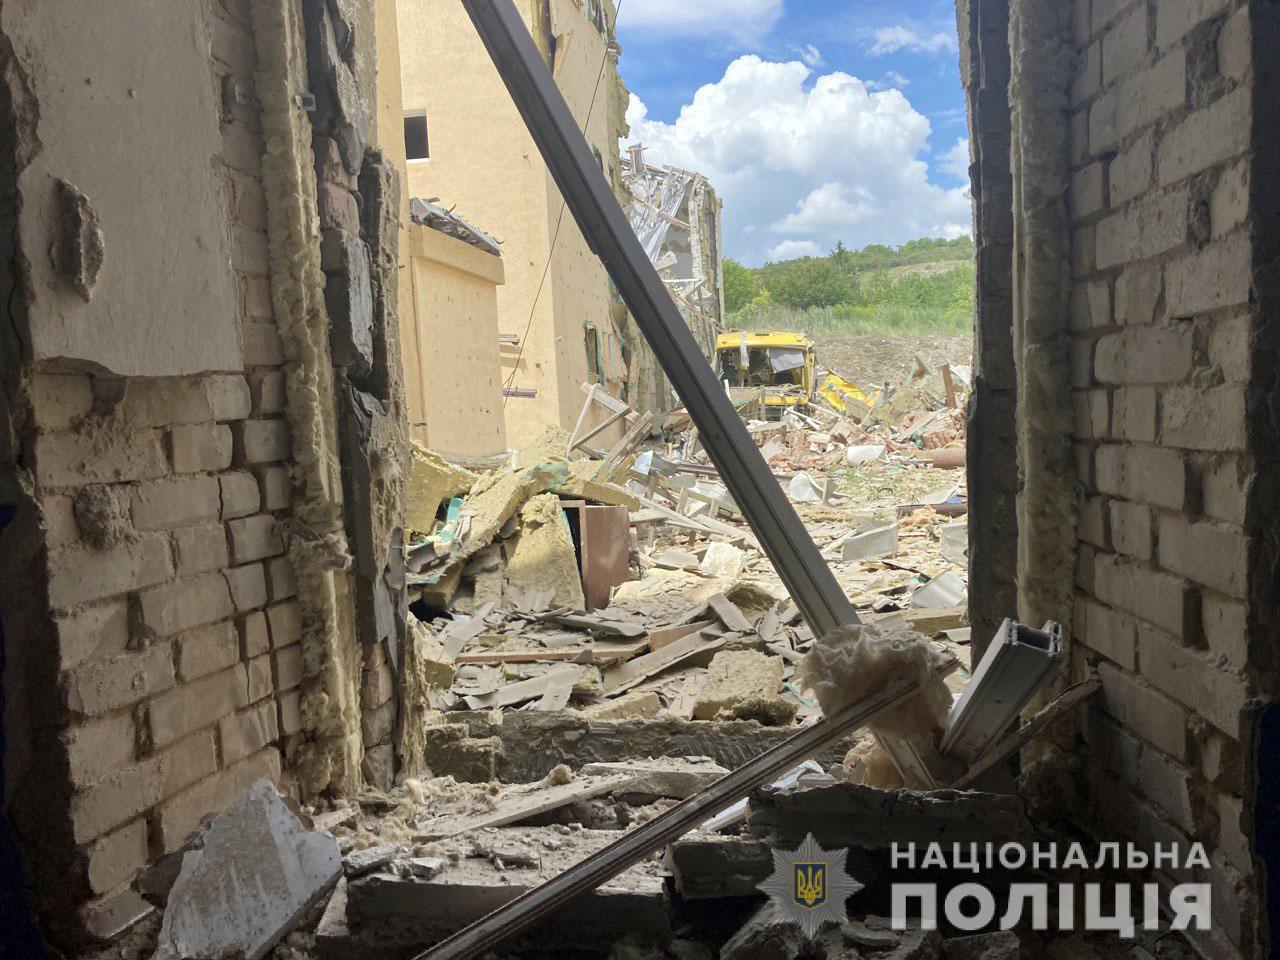 15 атак и 3 погибших гражданских: где стреляли захватчики в Донецкой области и какая военная ситуация в регионе 3